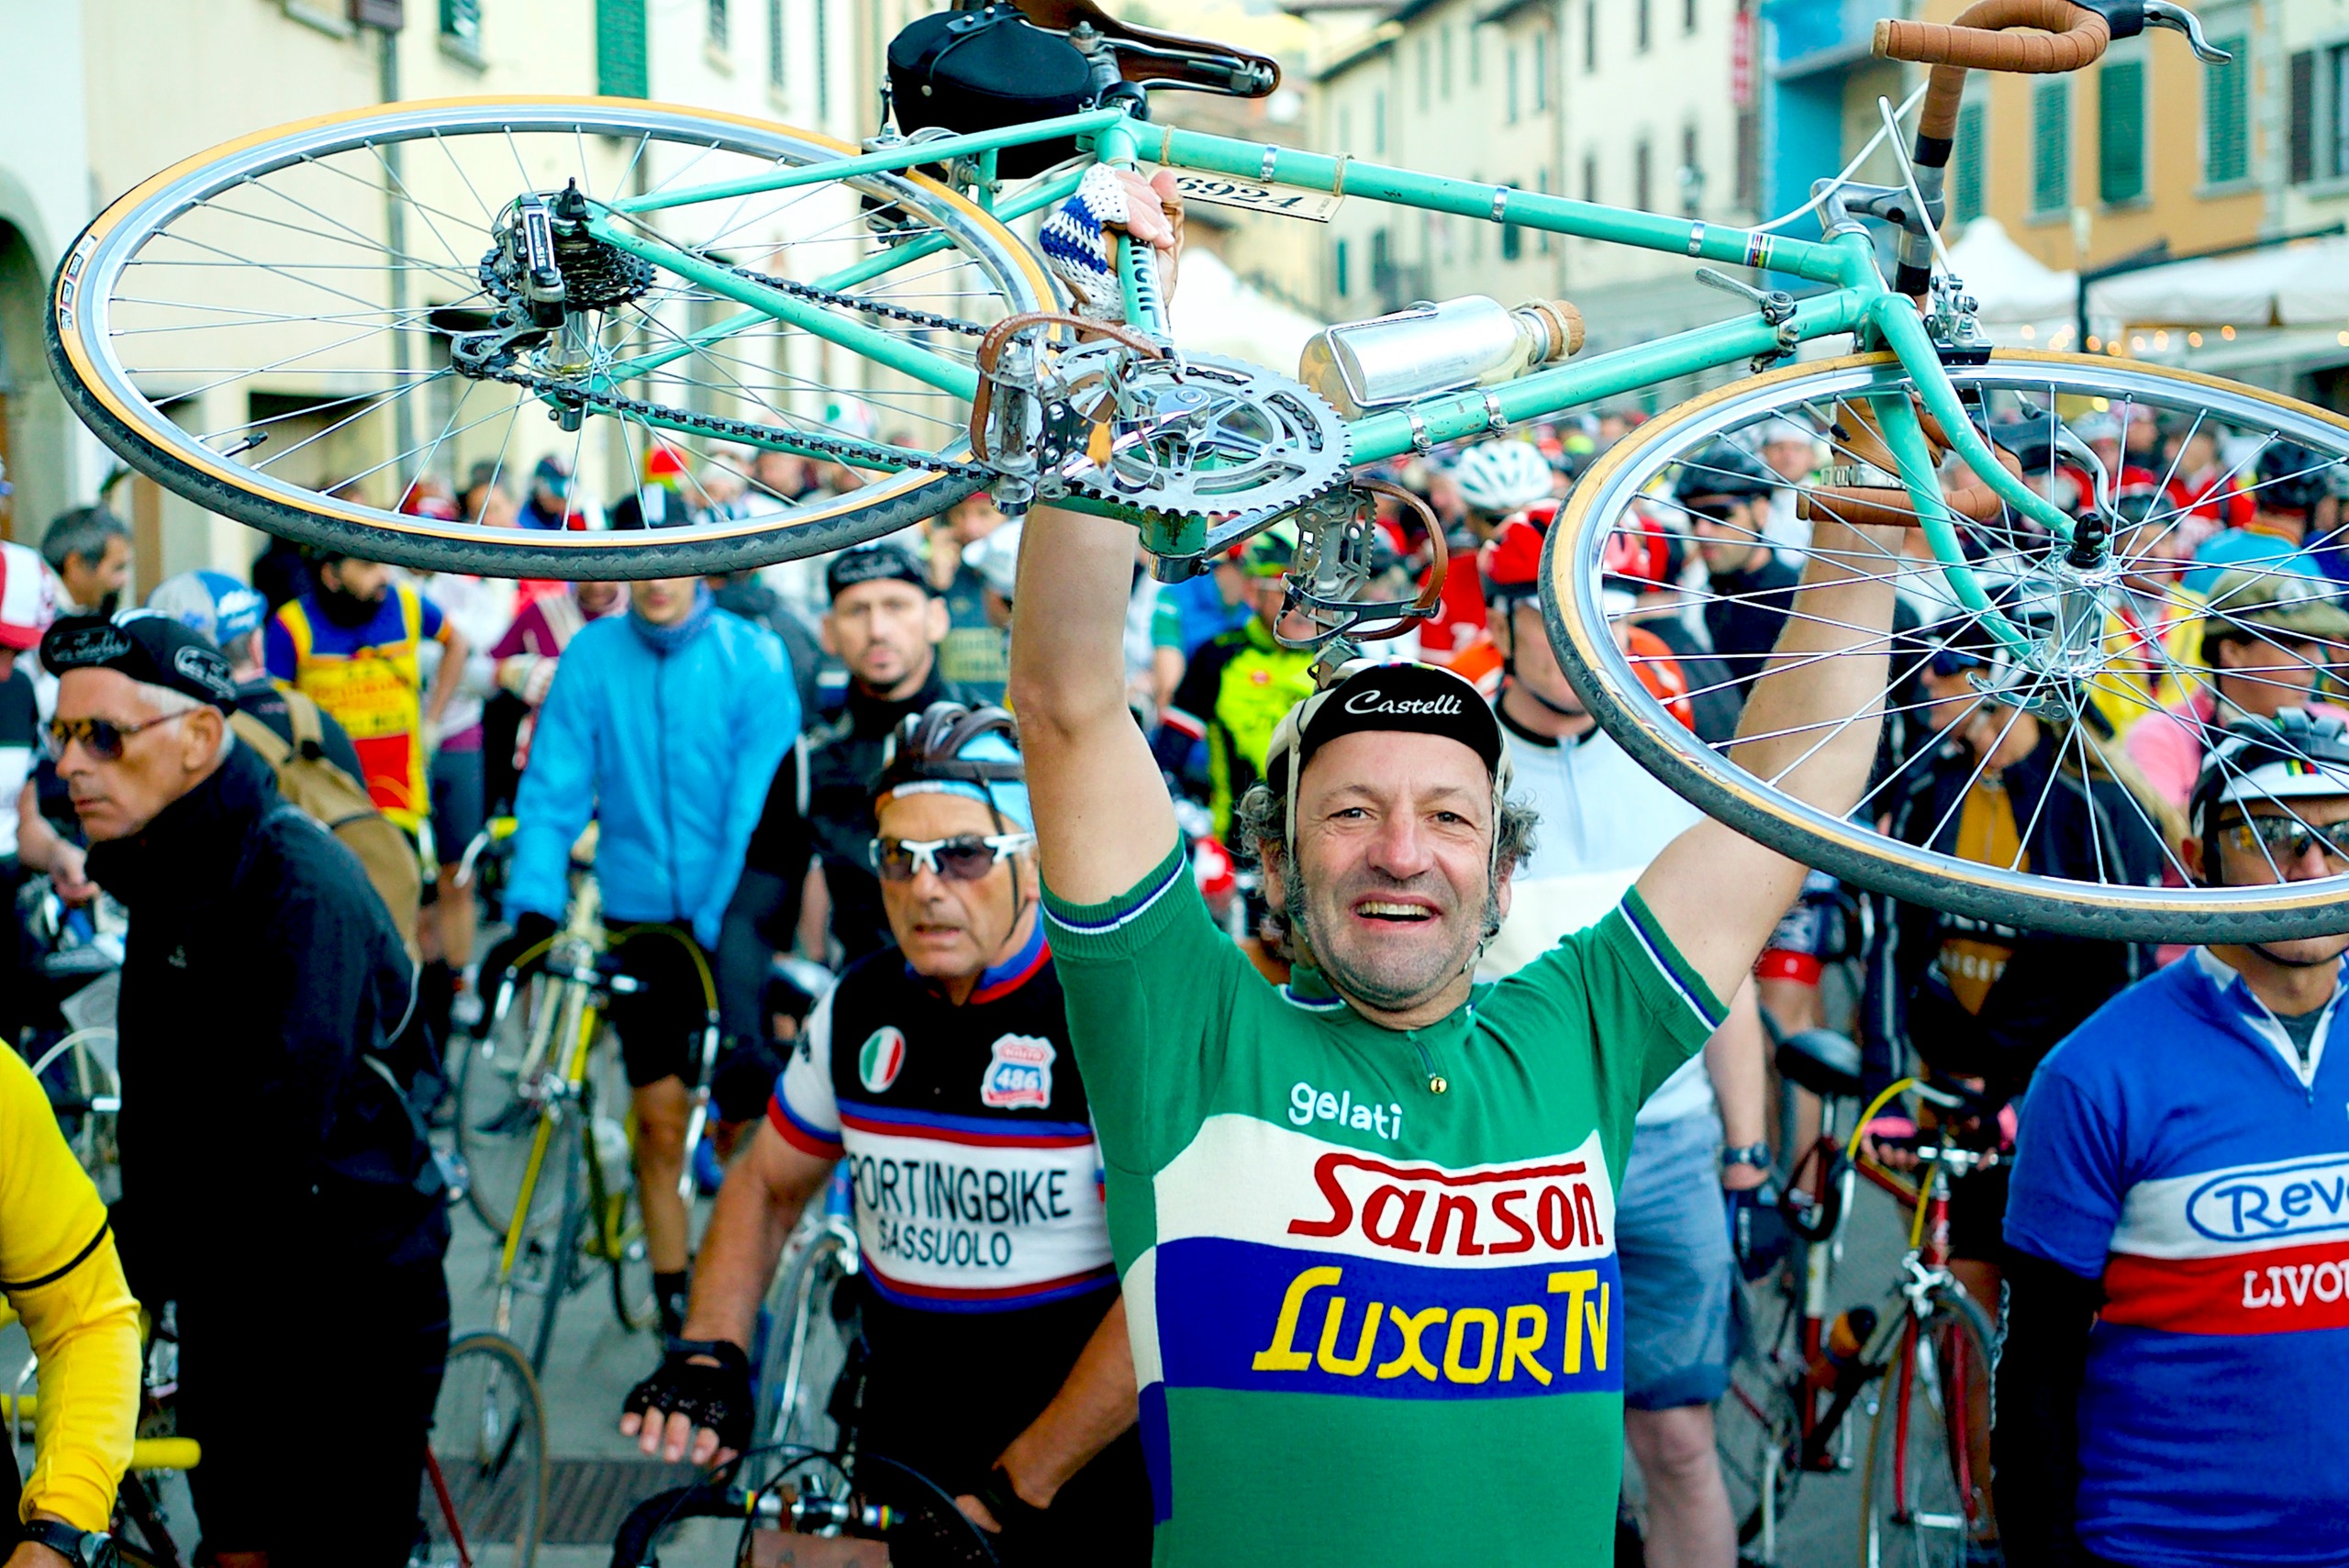 Historisches Radrennen in der Toskana mit dem Schmidt Max | Bild: André Goerschel